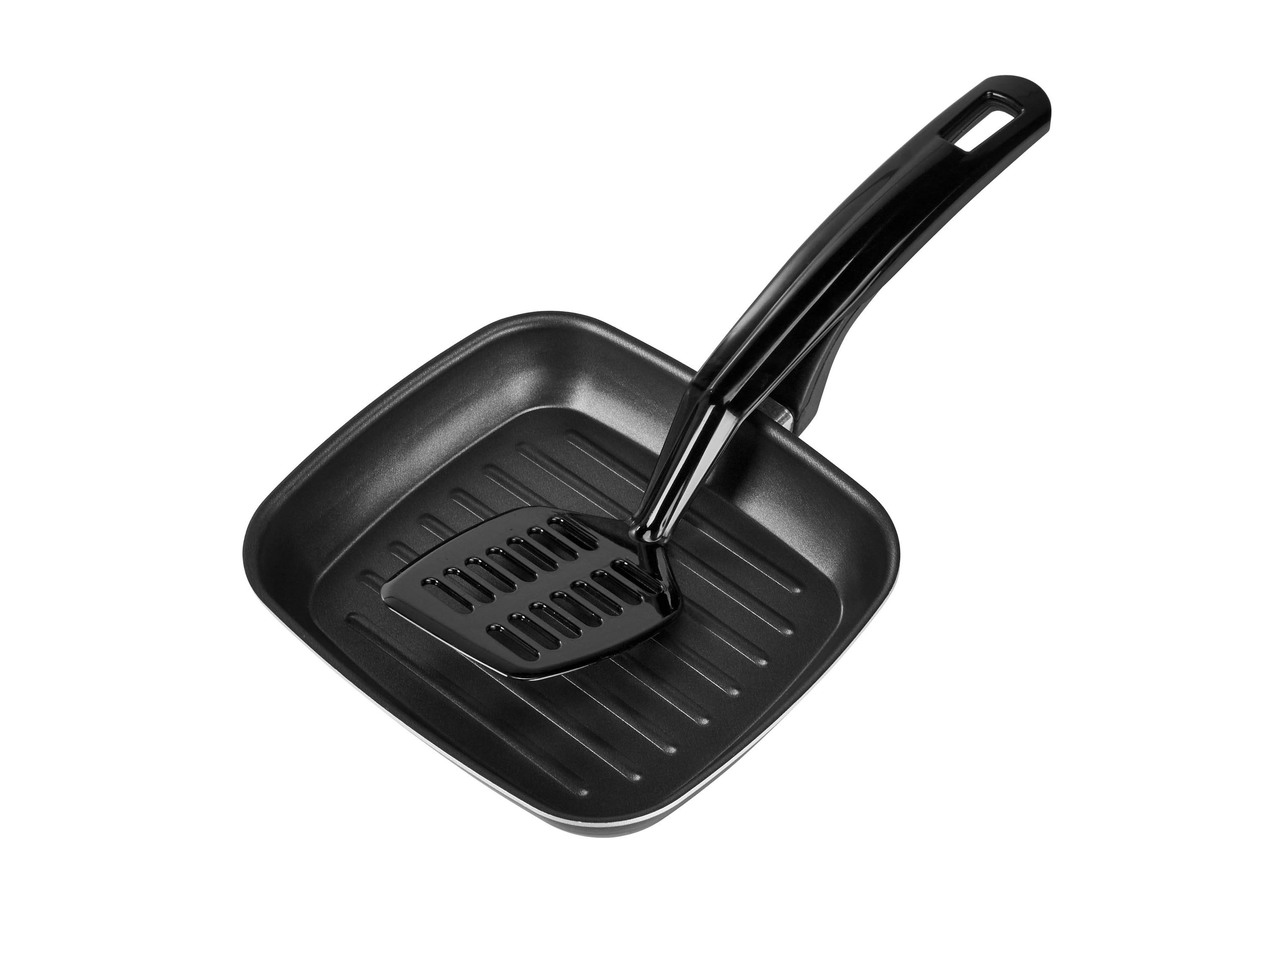 Grill Pan, Frying Pan or Saucepan